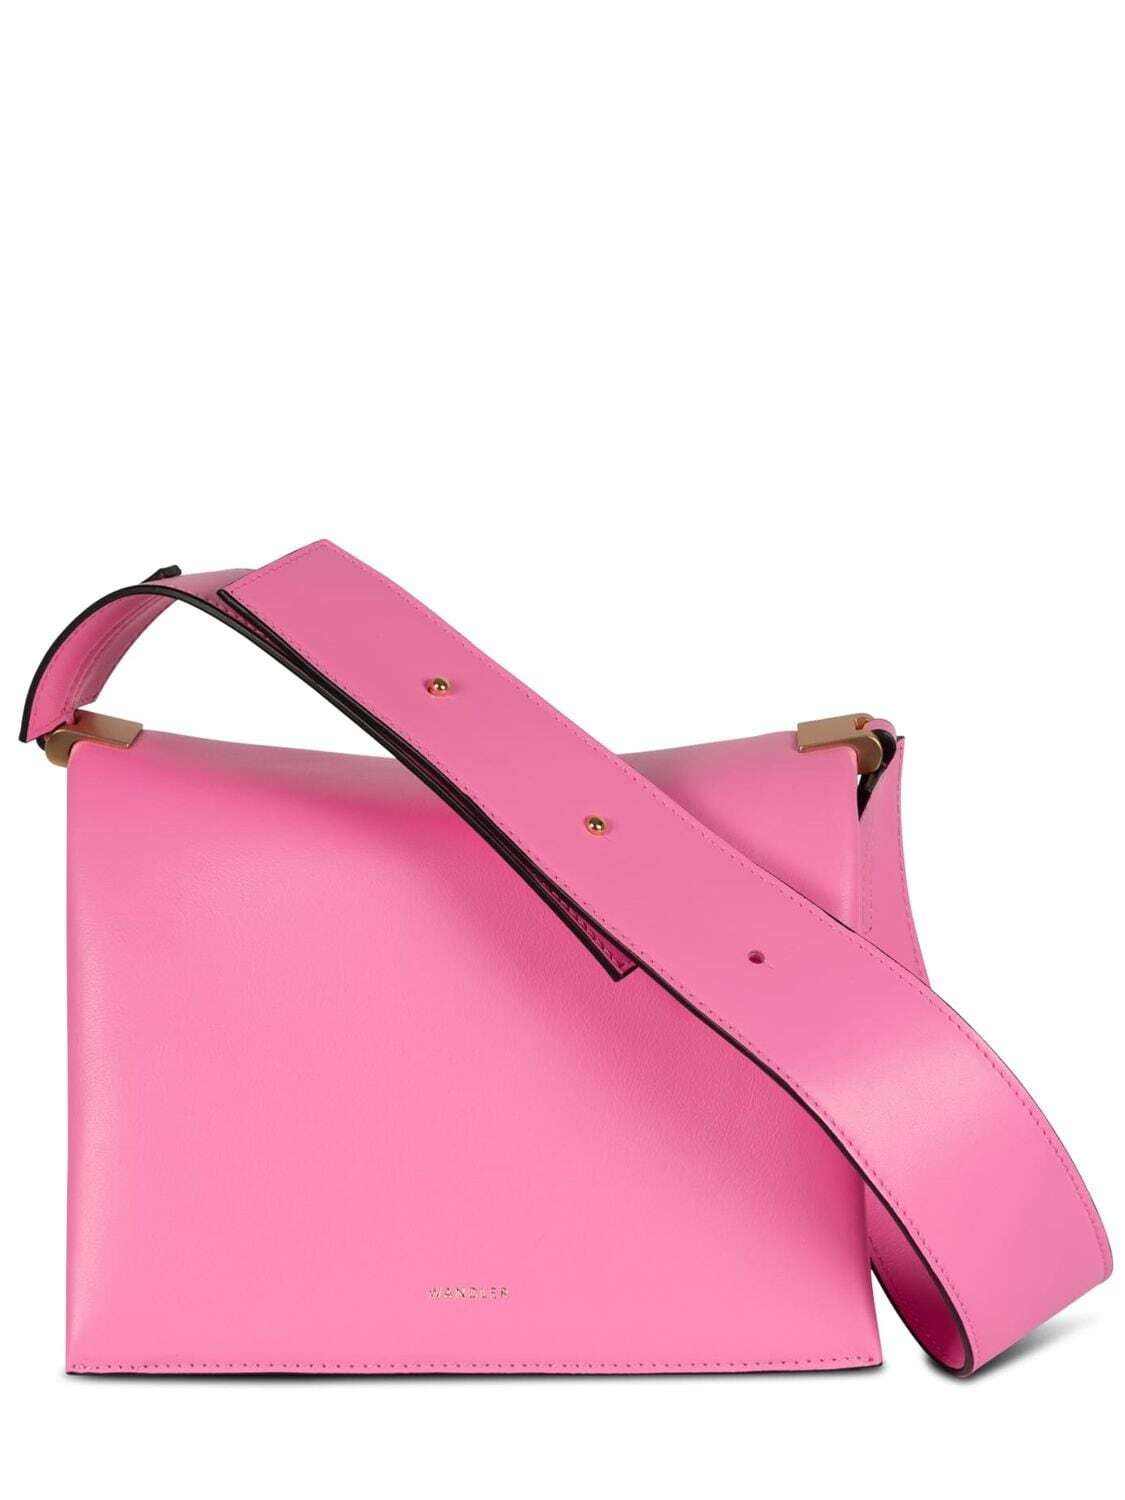 WANDLER Uma Box Leather Shoulder Bag in pink